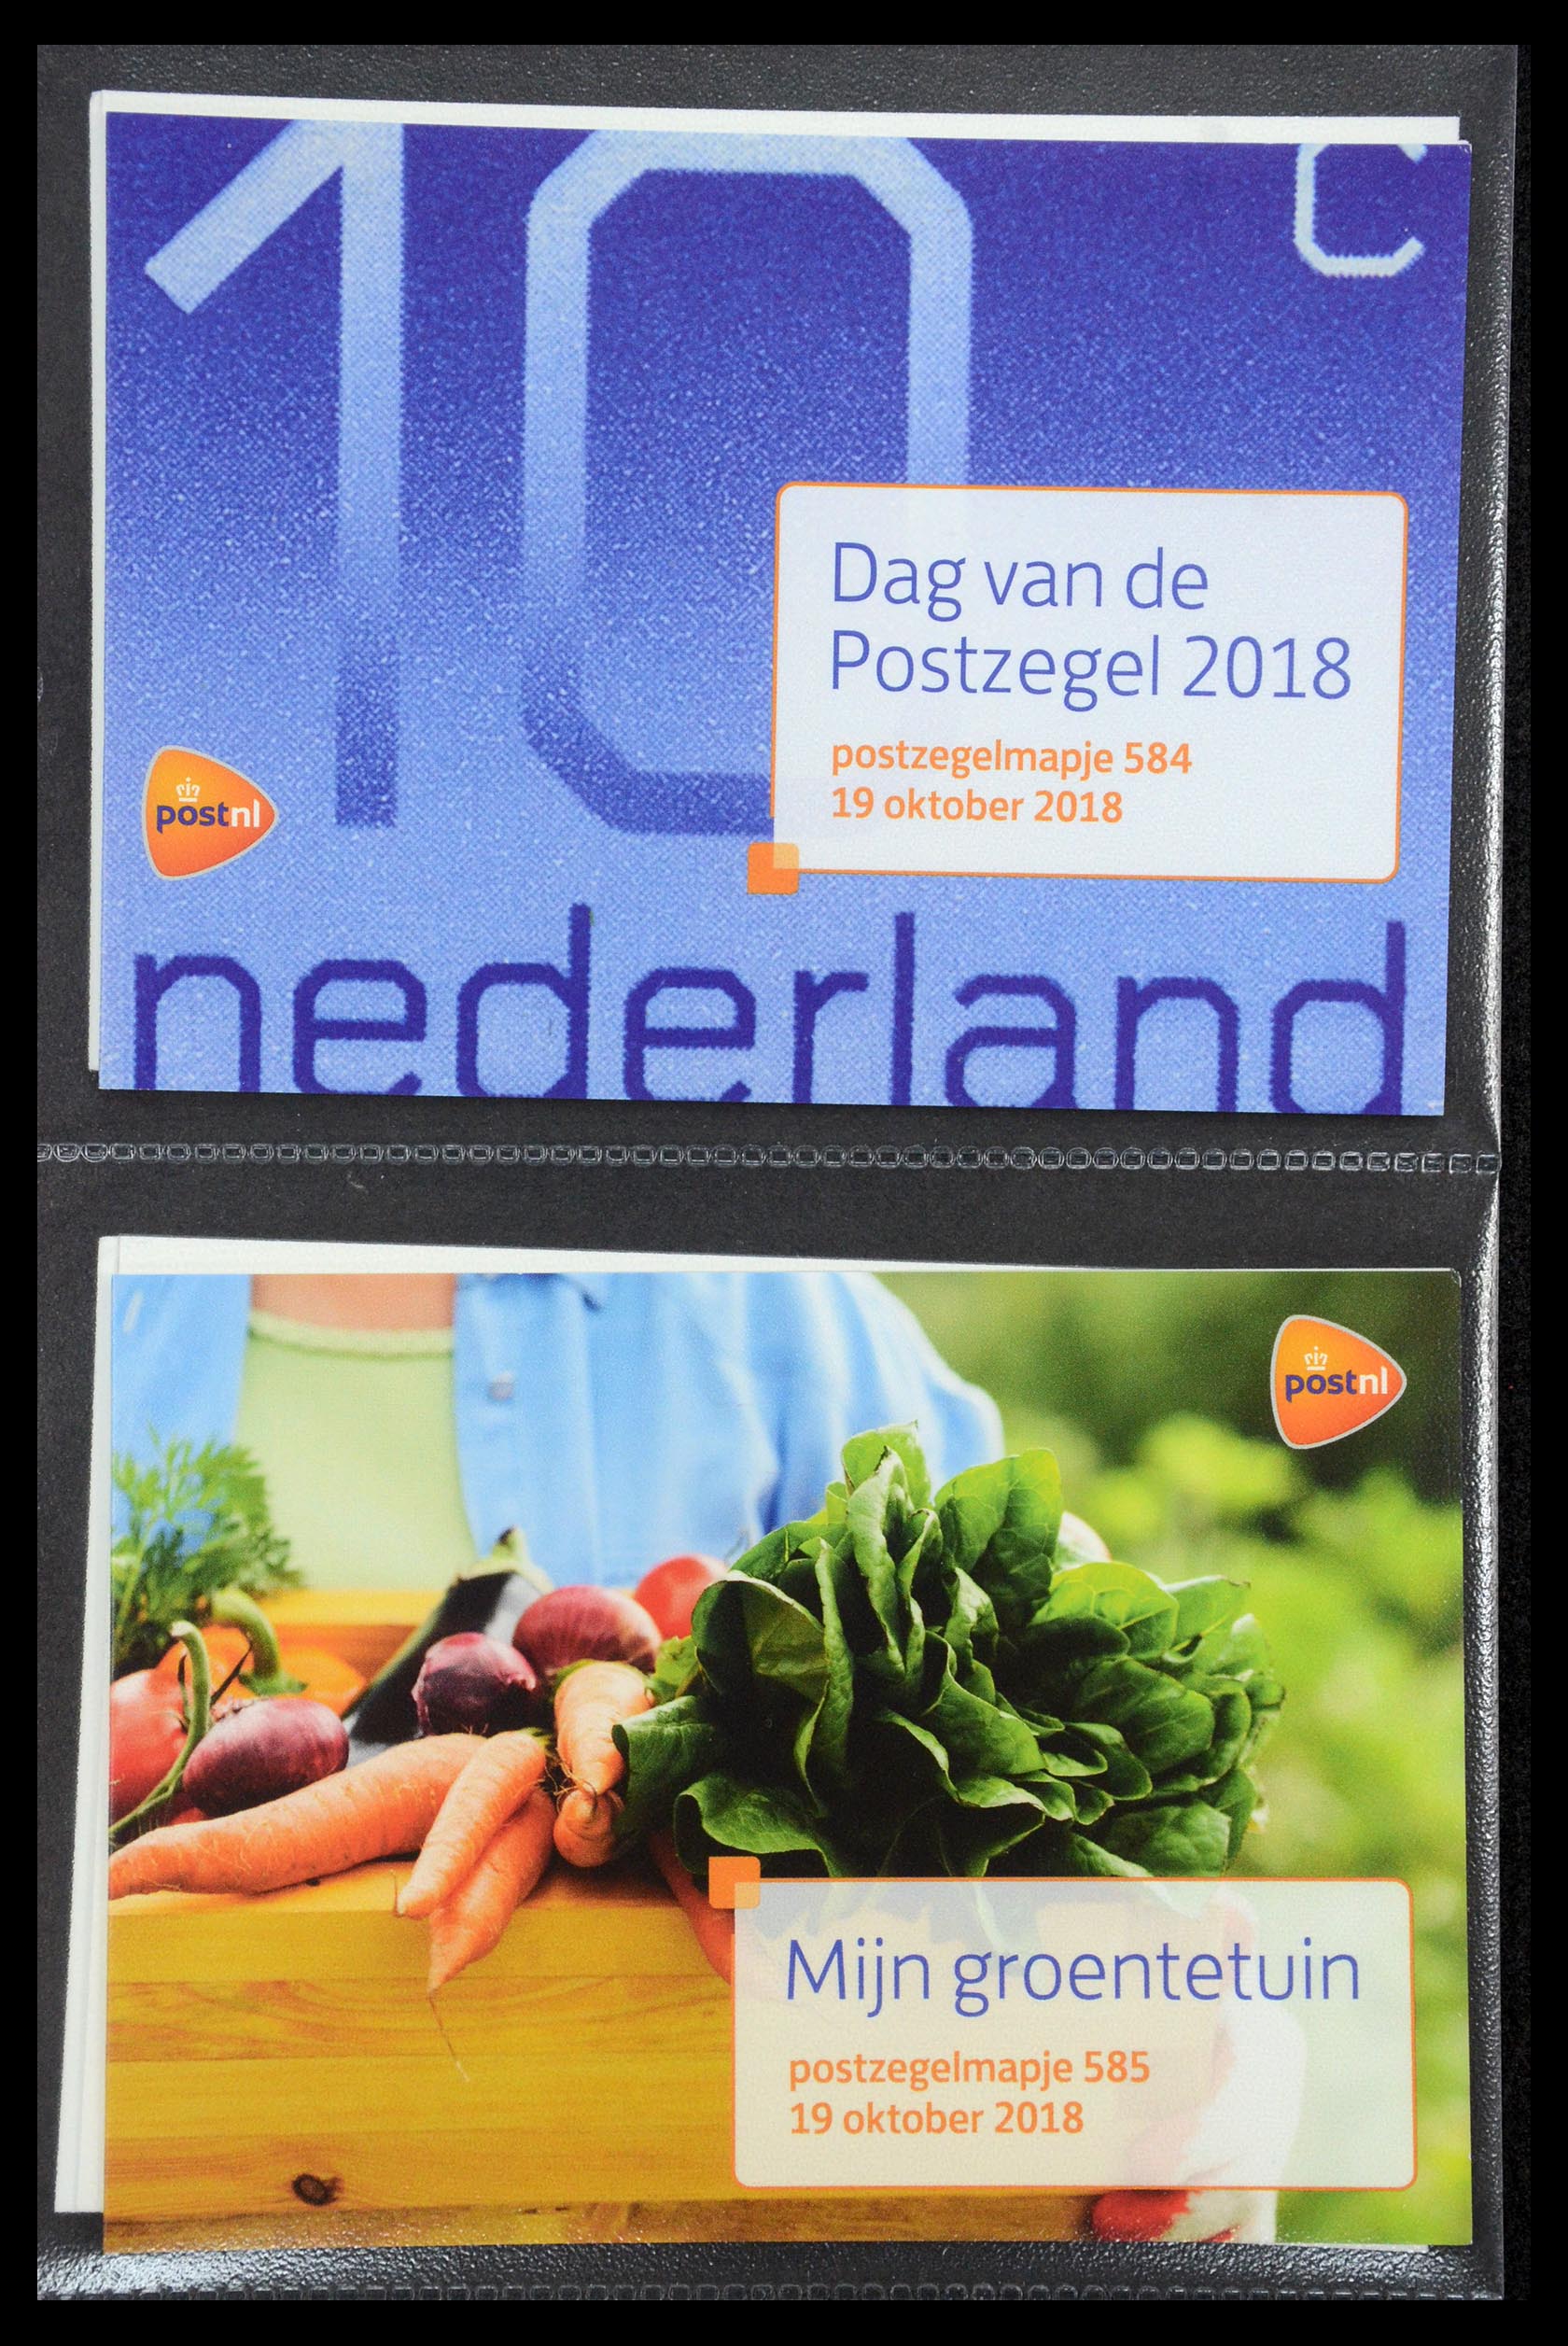 35187 353 - Stamp Collection 35187 Netherlands PTT presentation packs 1982-2019!